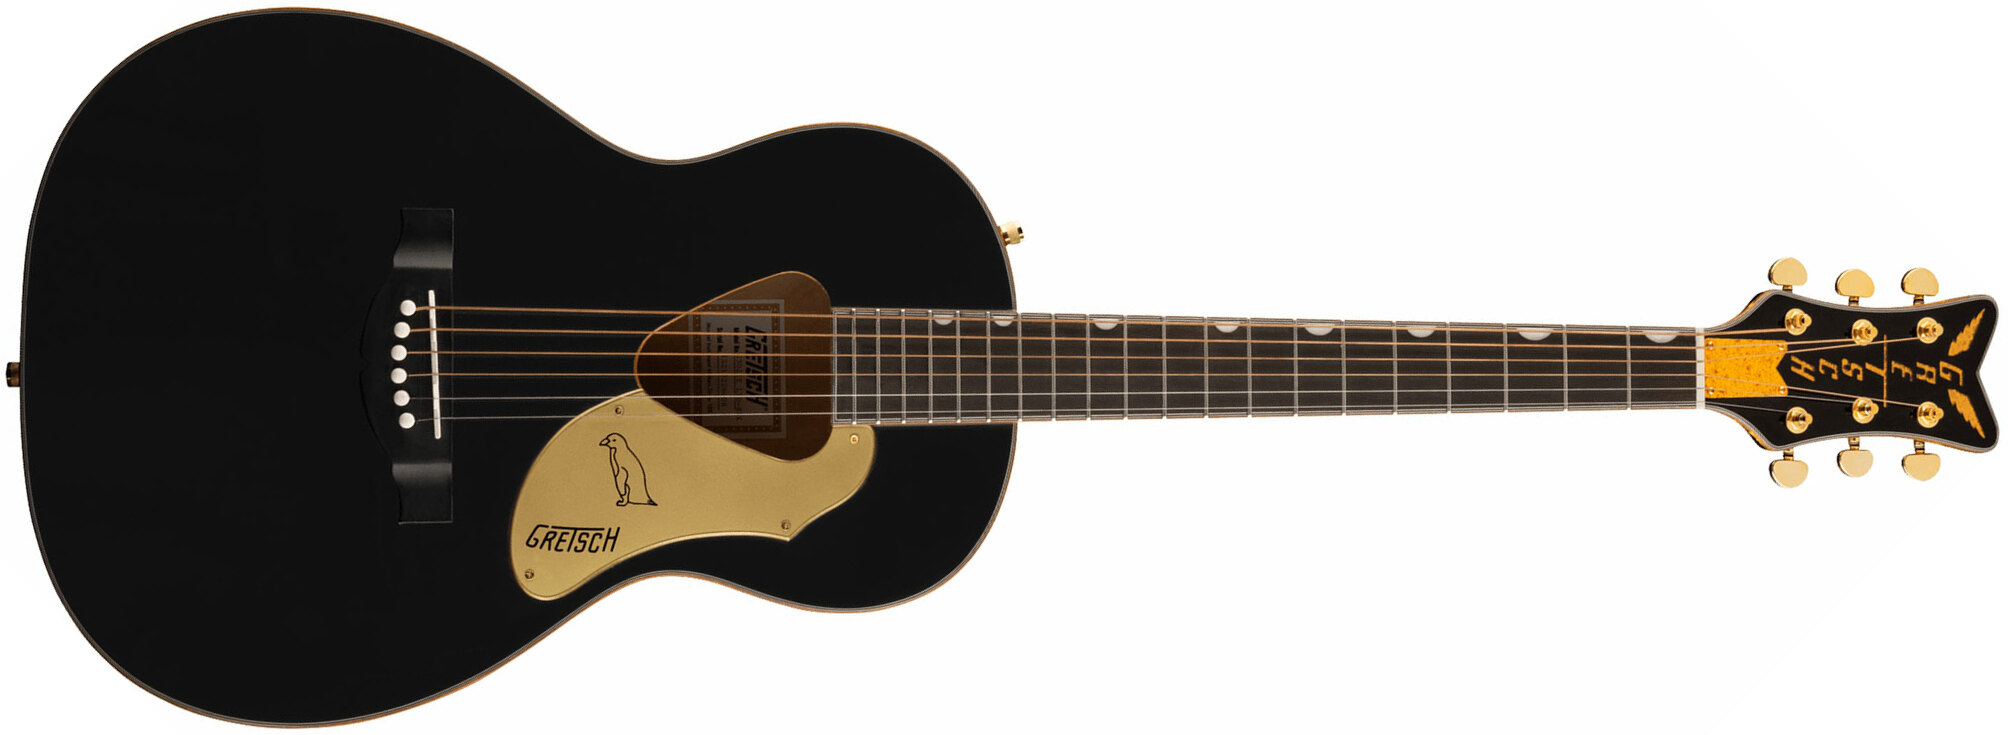 Gretsch G5021e Rancher Penguin Parlor Epicea Erable Lau - Black - Electro acoustic guitar - Main picture